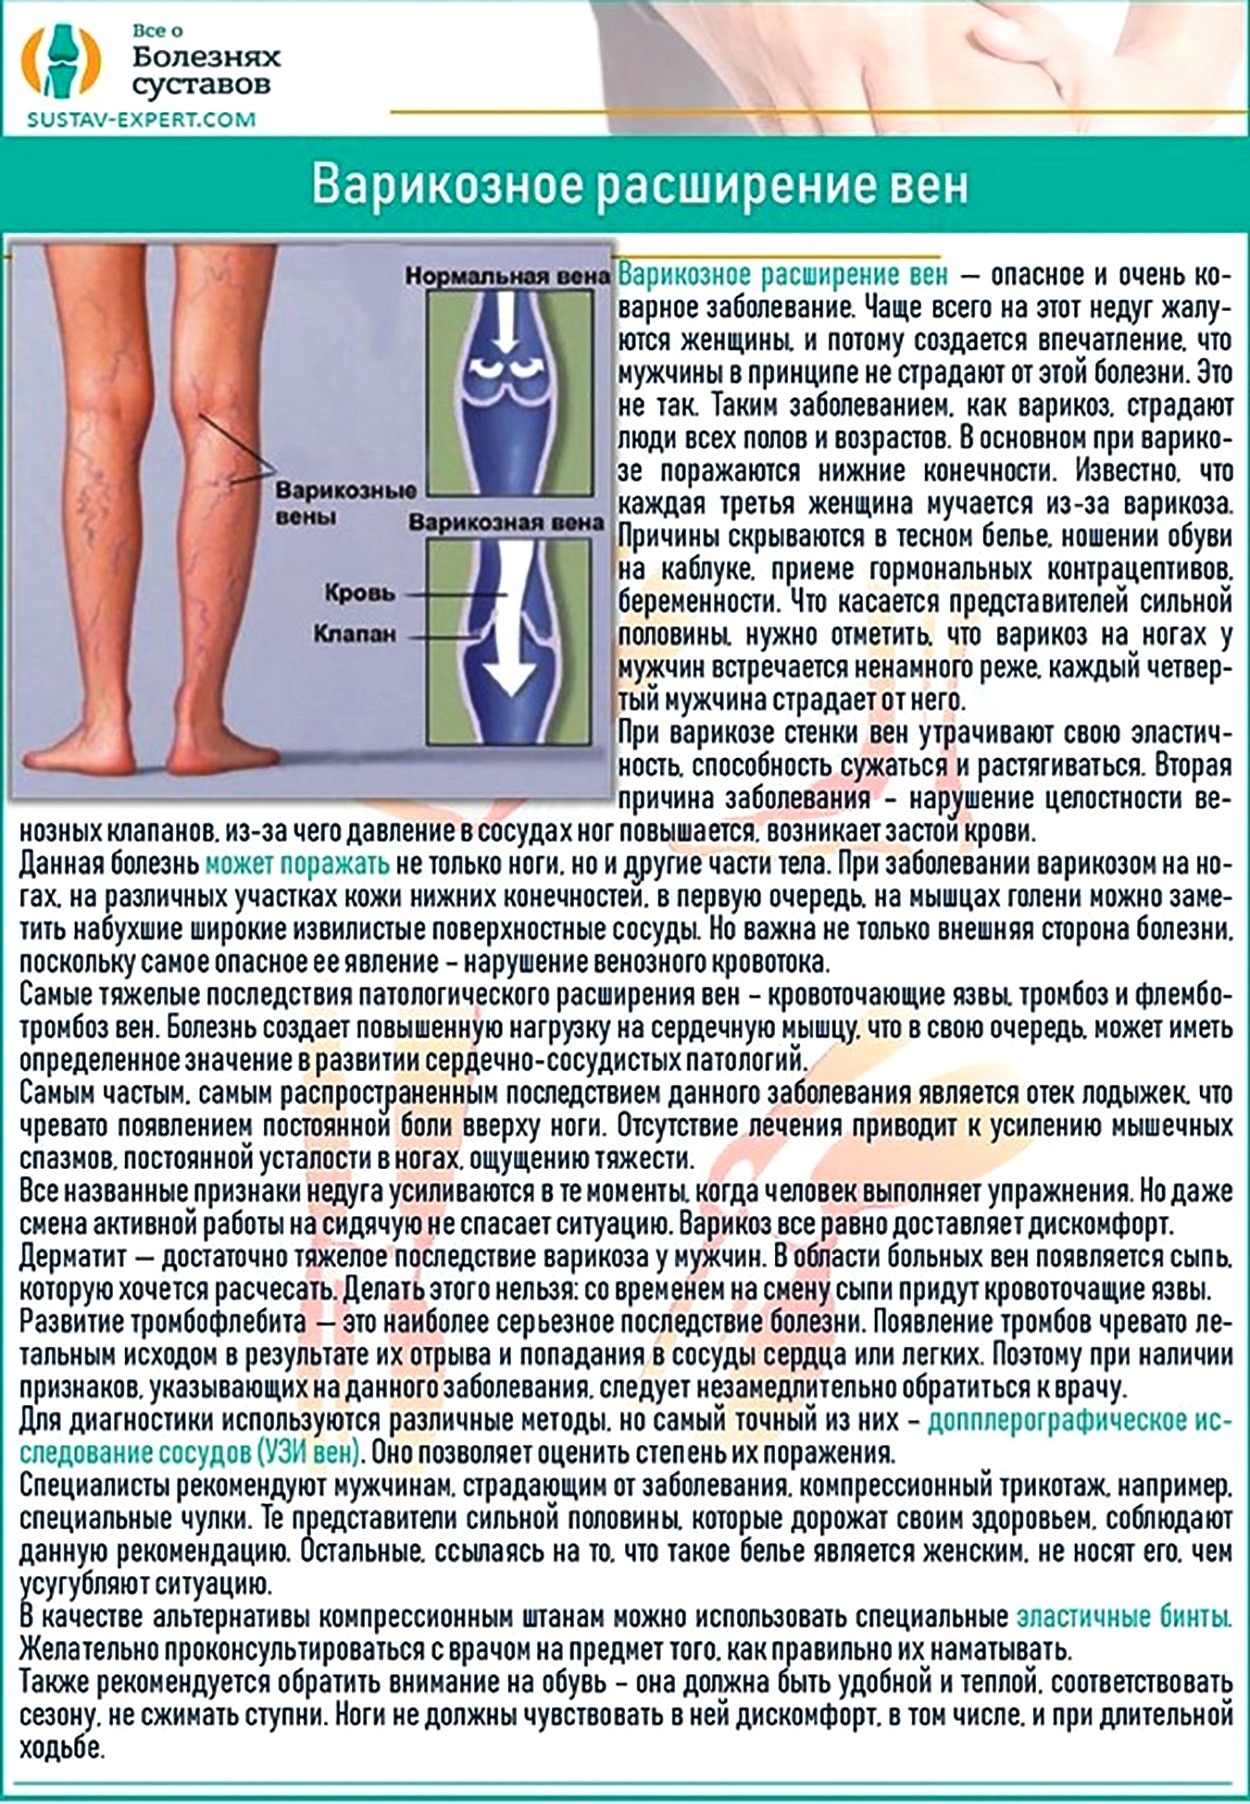 Горят ноги ступни у мужчин причины. Варикозная болезнь вен нижних конечностей факторы. Варикозная болезнь вен нижних конечностей по степени. Варикозное расширение вен нижних конечностей профилактика. Варикозное расширение вен голеней профилактика.